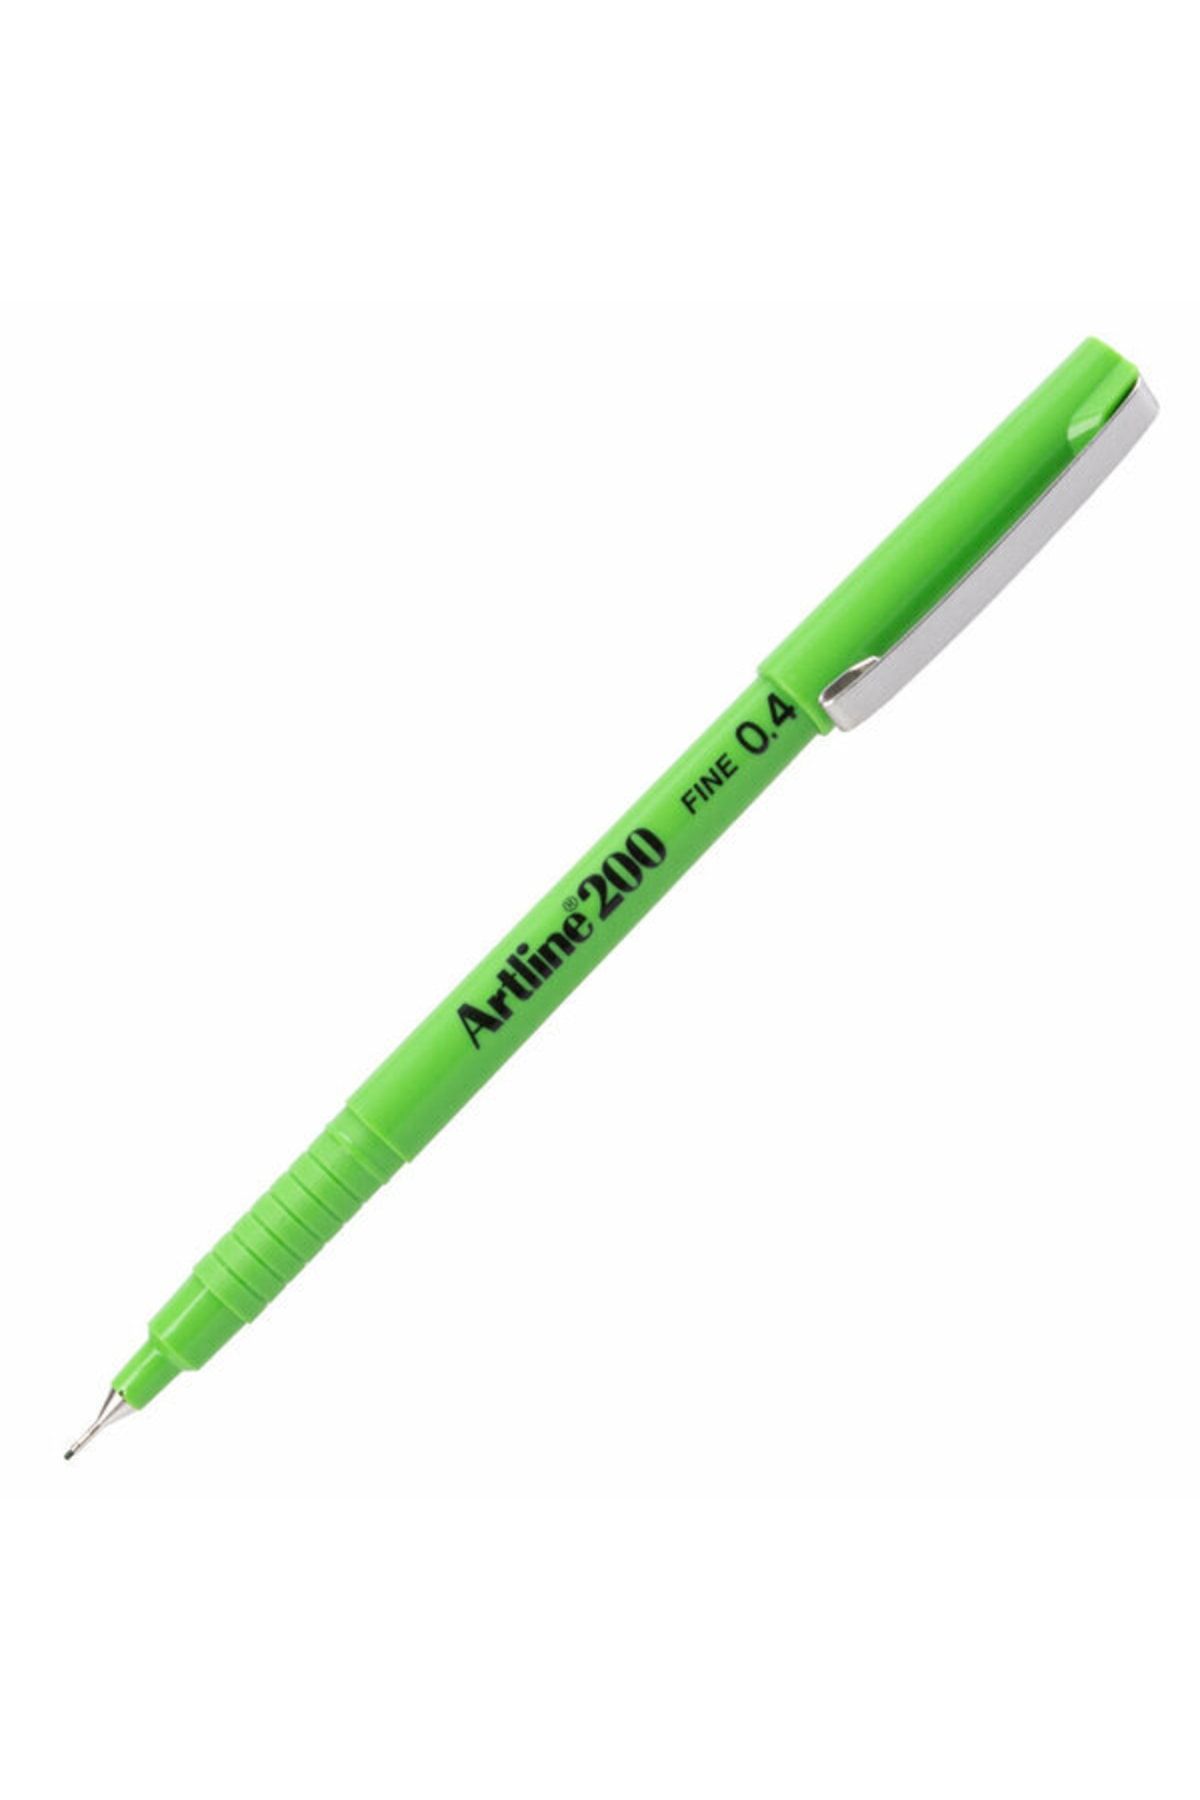 artline Fine Yazı Kalemi 0.4mm Keçe Uçlu Fıstık Yeşili Lv-a-ek-200n Y.green 12 Adet